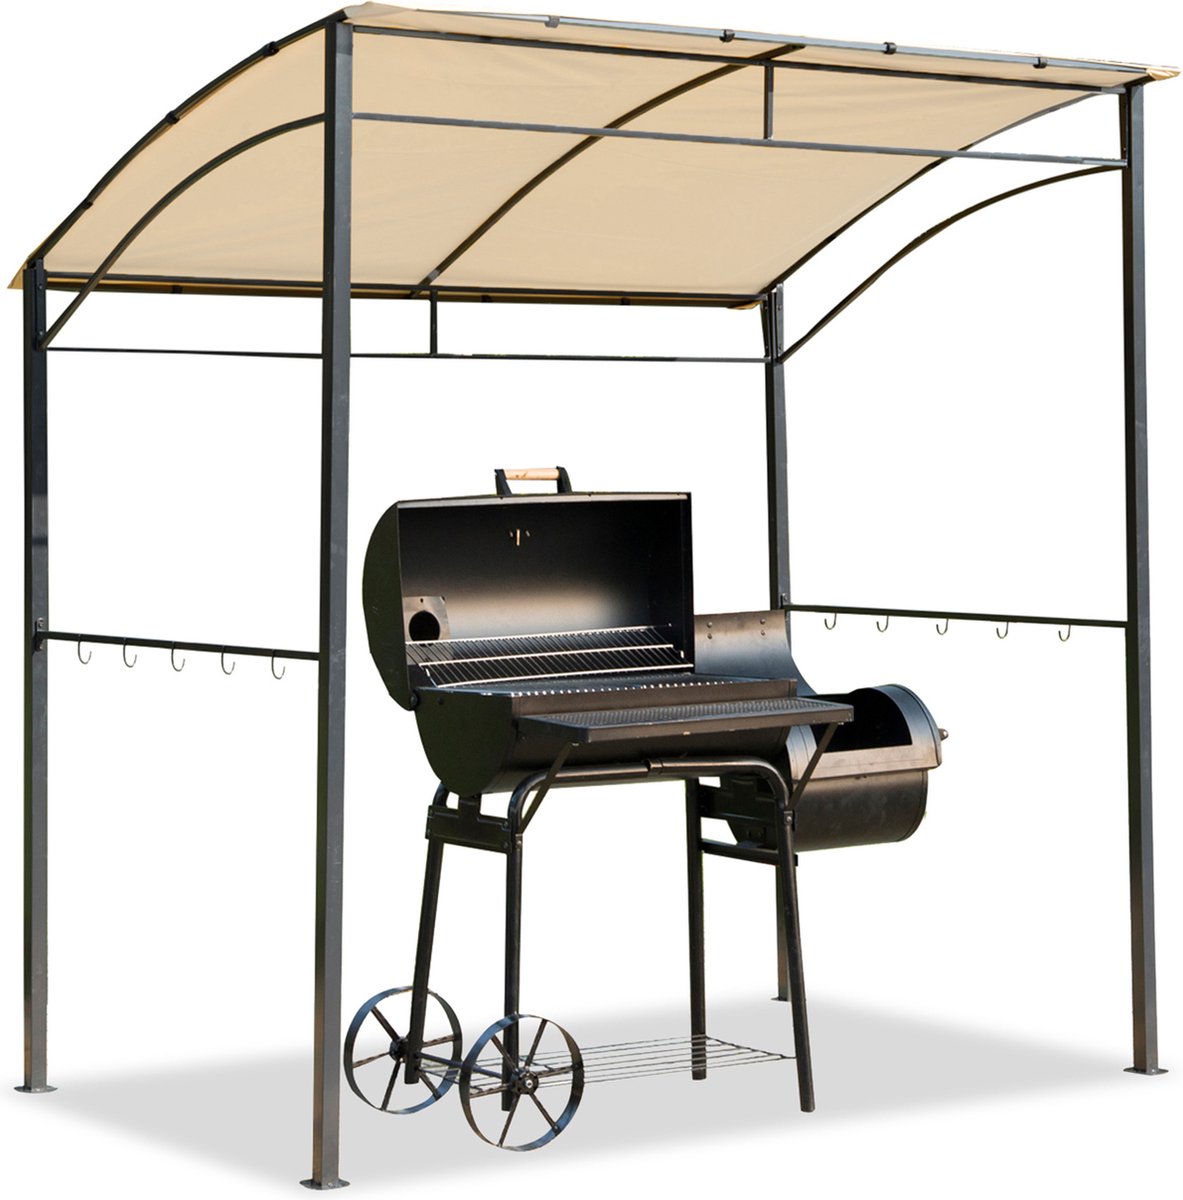 Outsunny Barbecuepaviljoen BBQ grill paviljoen 215 x 150 x 180 / 220 cm met vlamwerend dak staal 01-0279